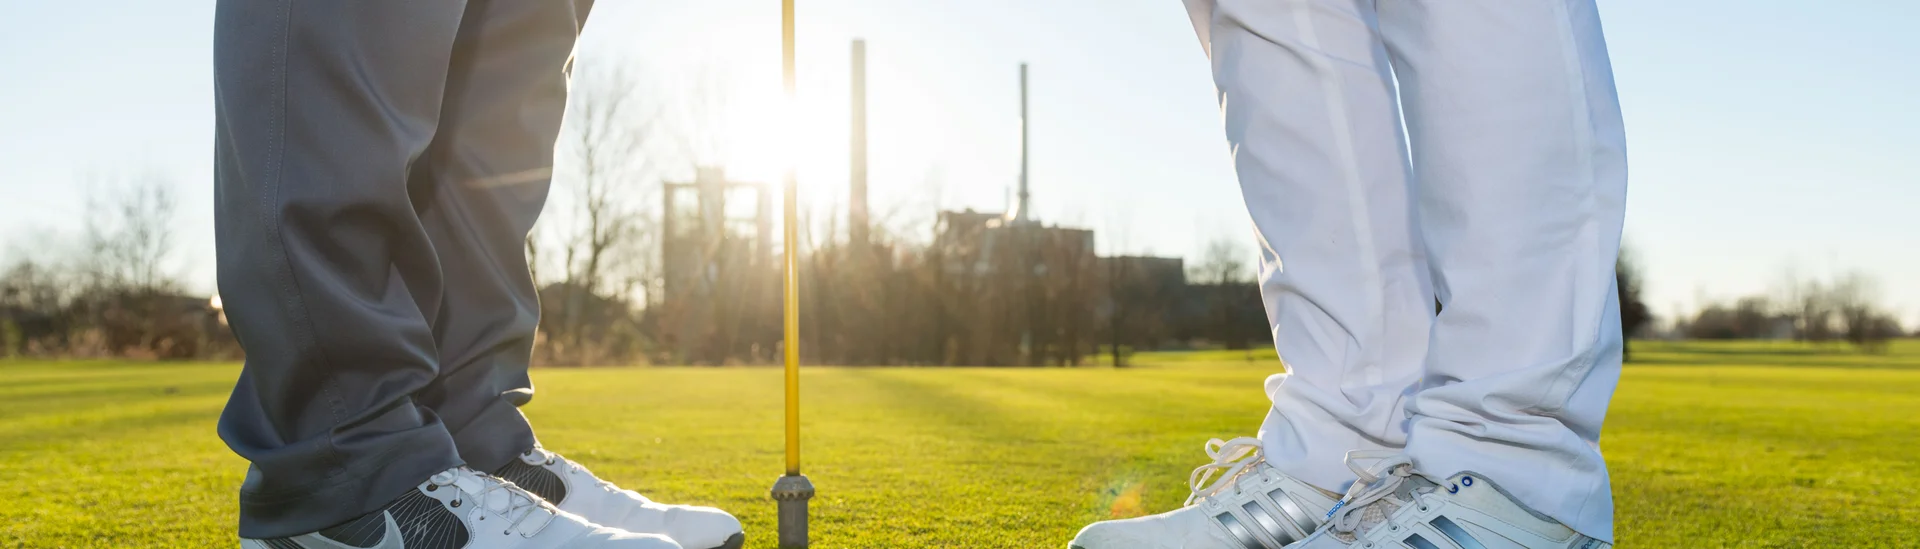 zwei Personen in Turnschuhen stehen voreinander vor einem Golfloch mit Fahne, Ausschnitt bis kurz über dem Knie